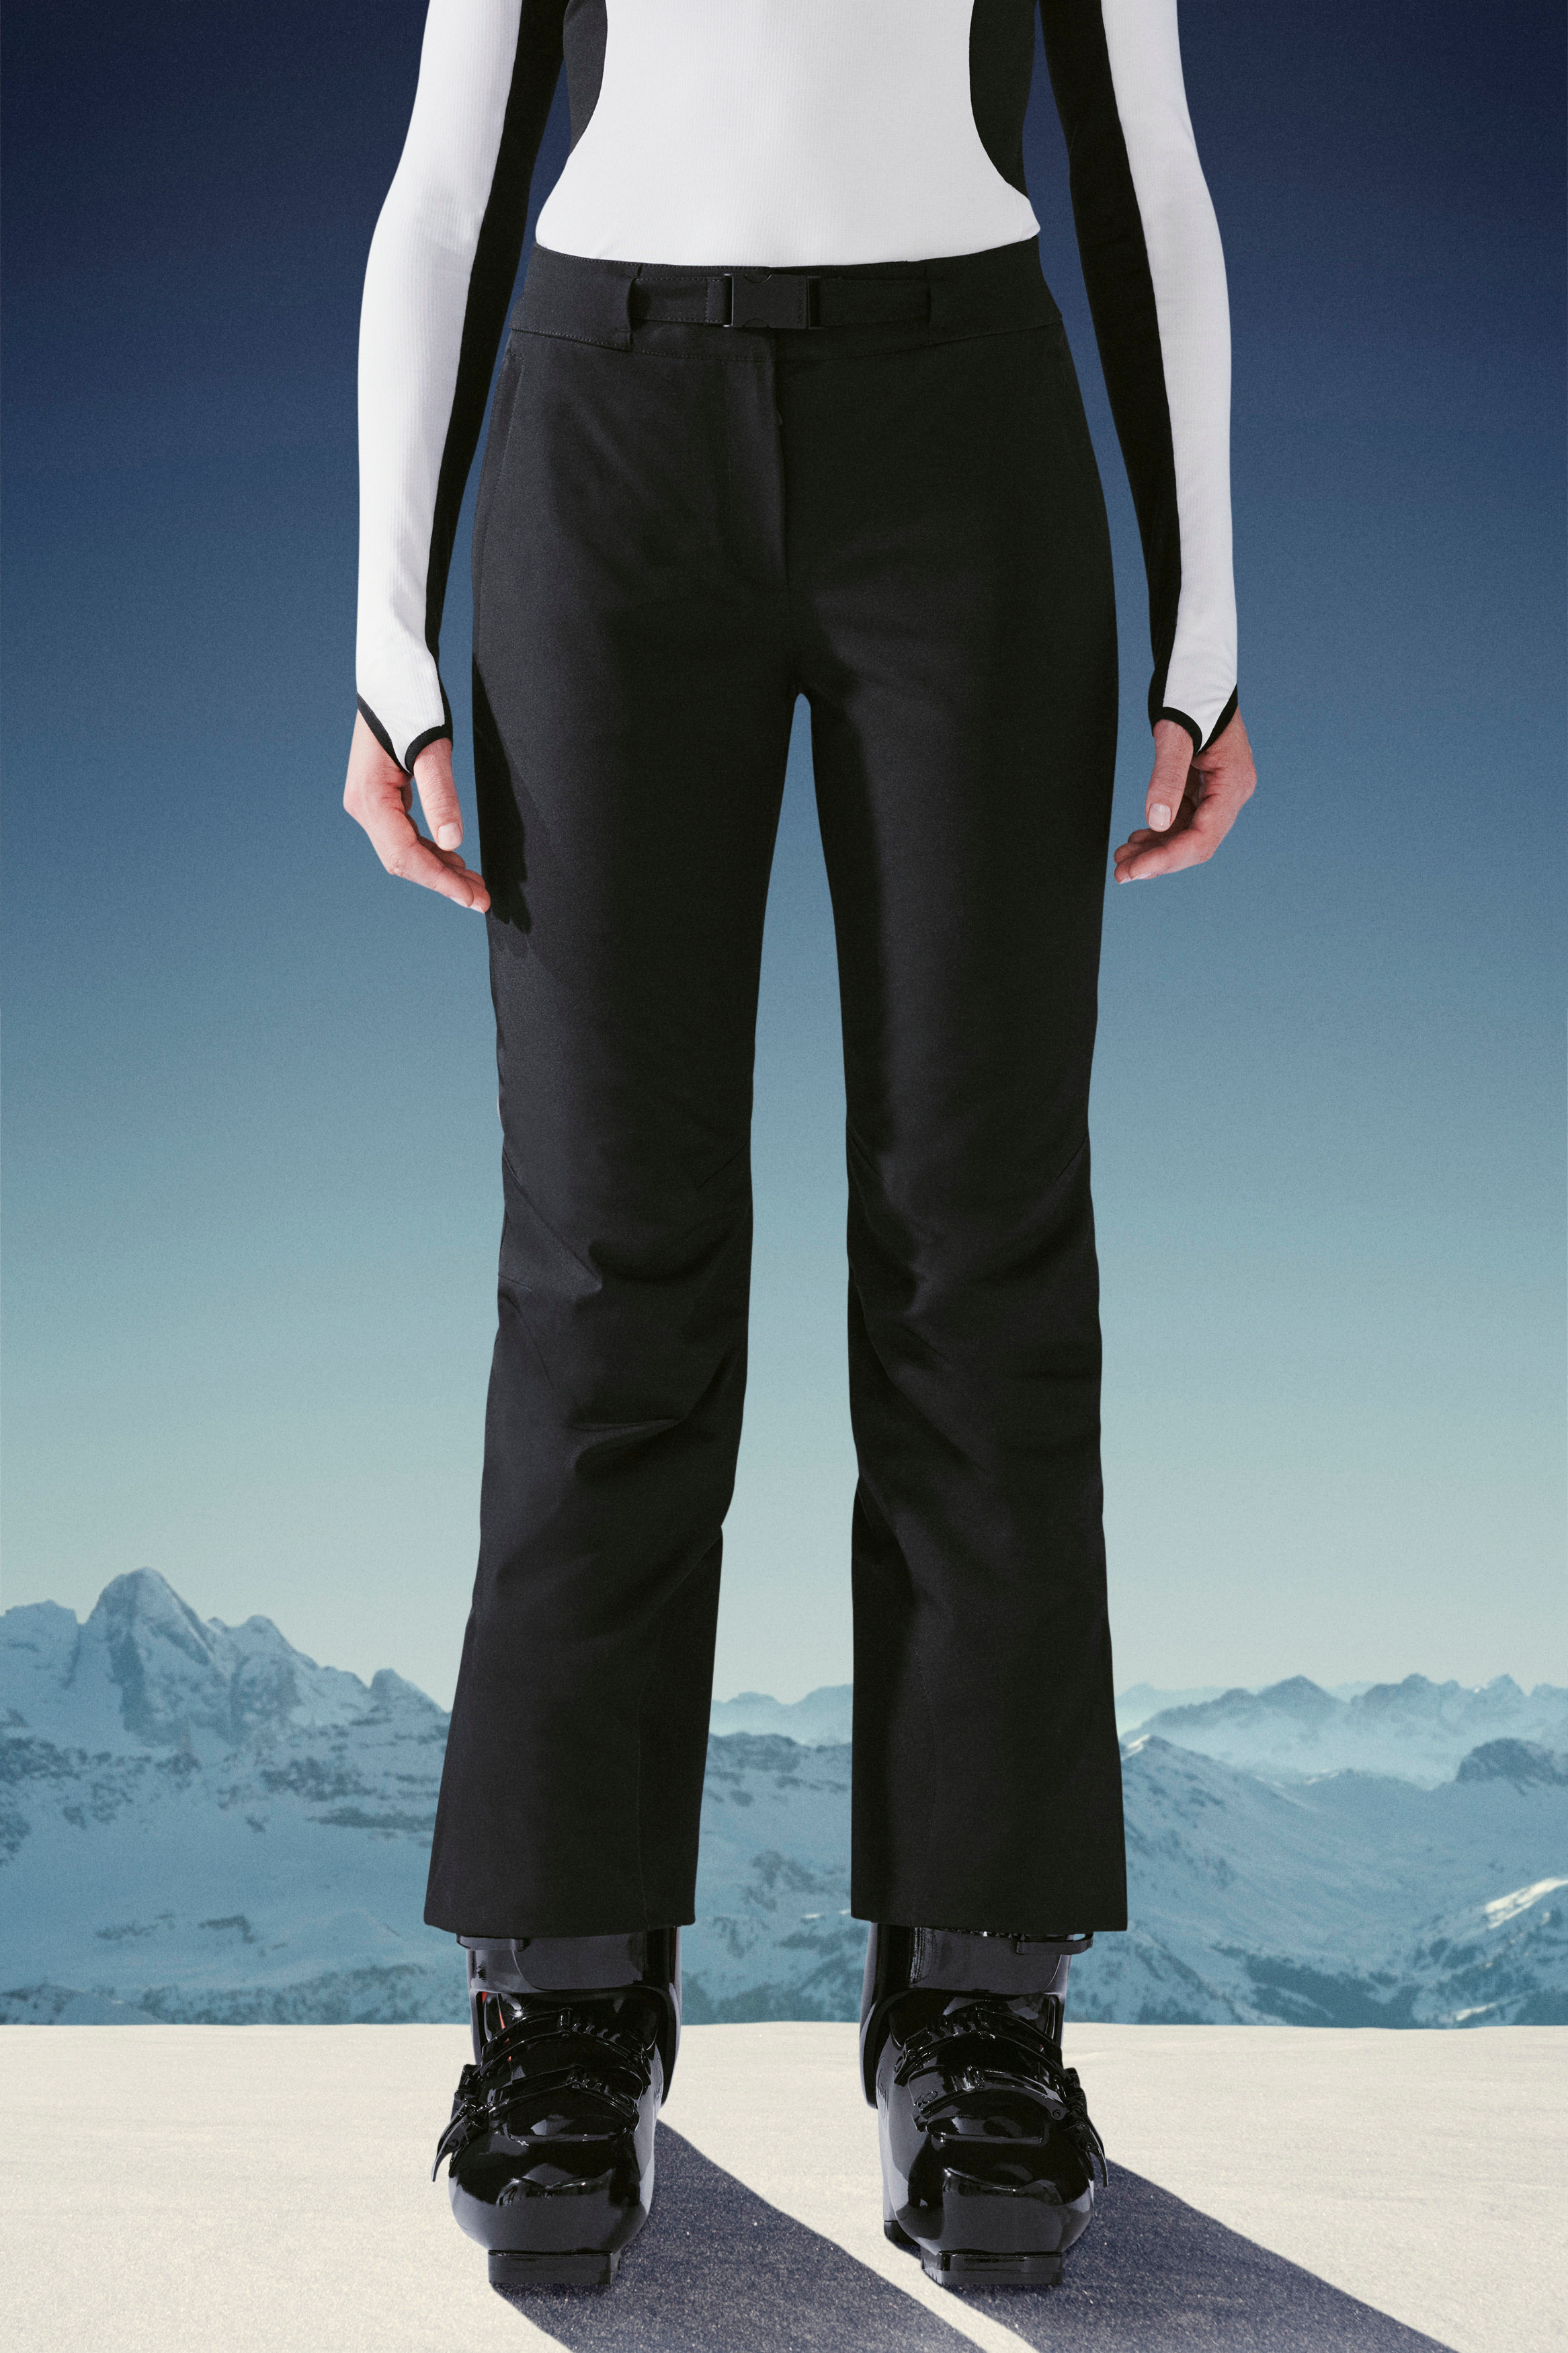 Ski Pants for Women - Grenoble | Moncler US